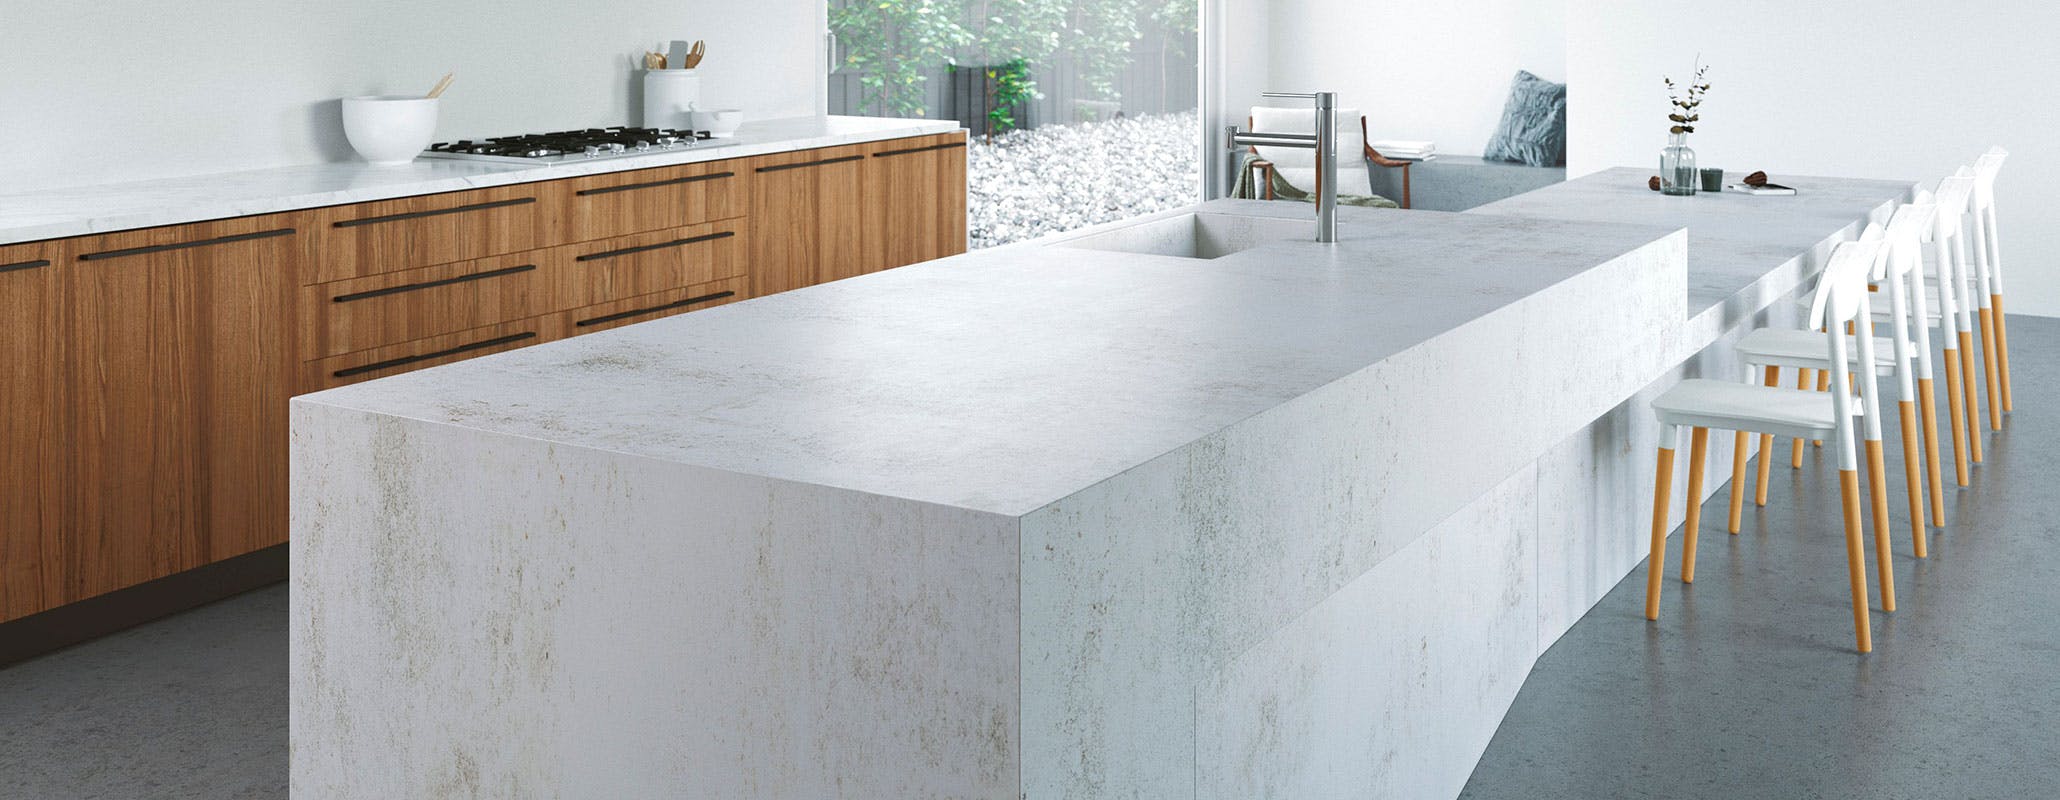 Superfici cucina: dal granito al marmo, che materiali scegliere